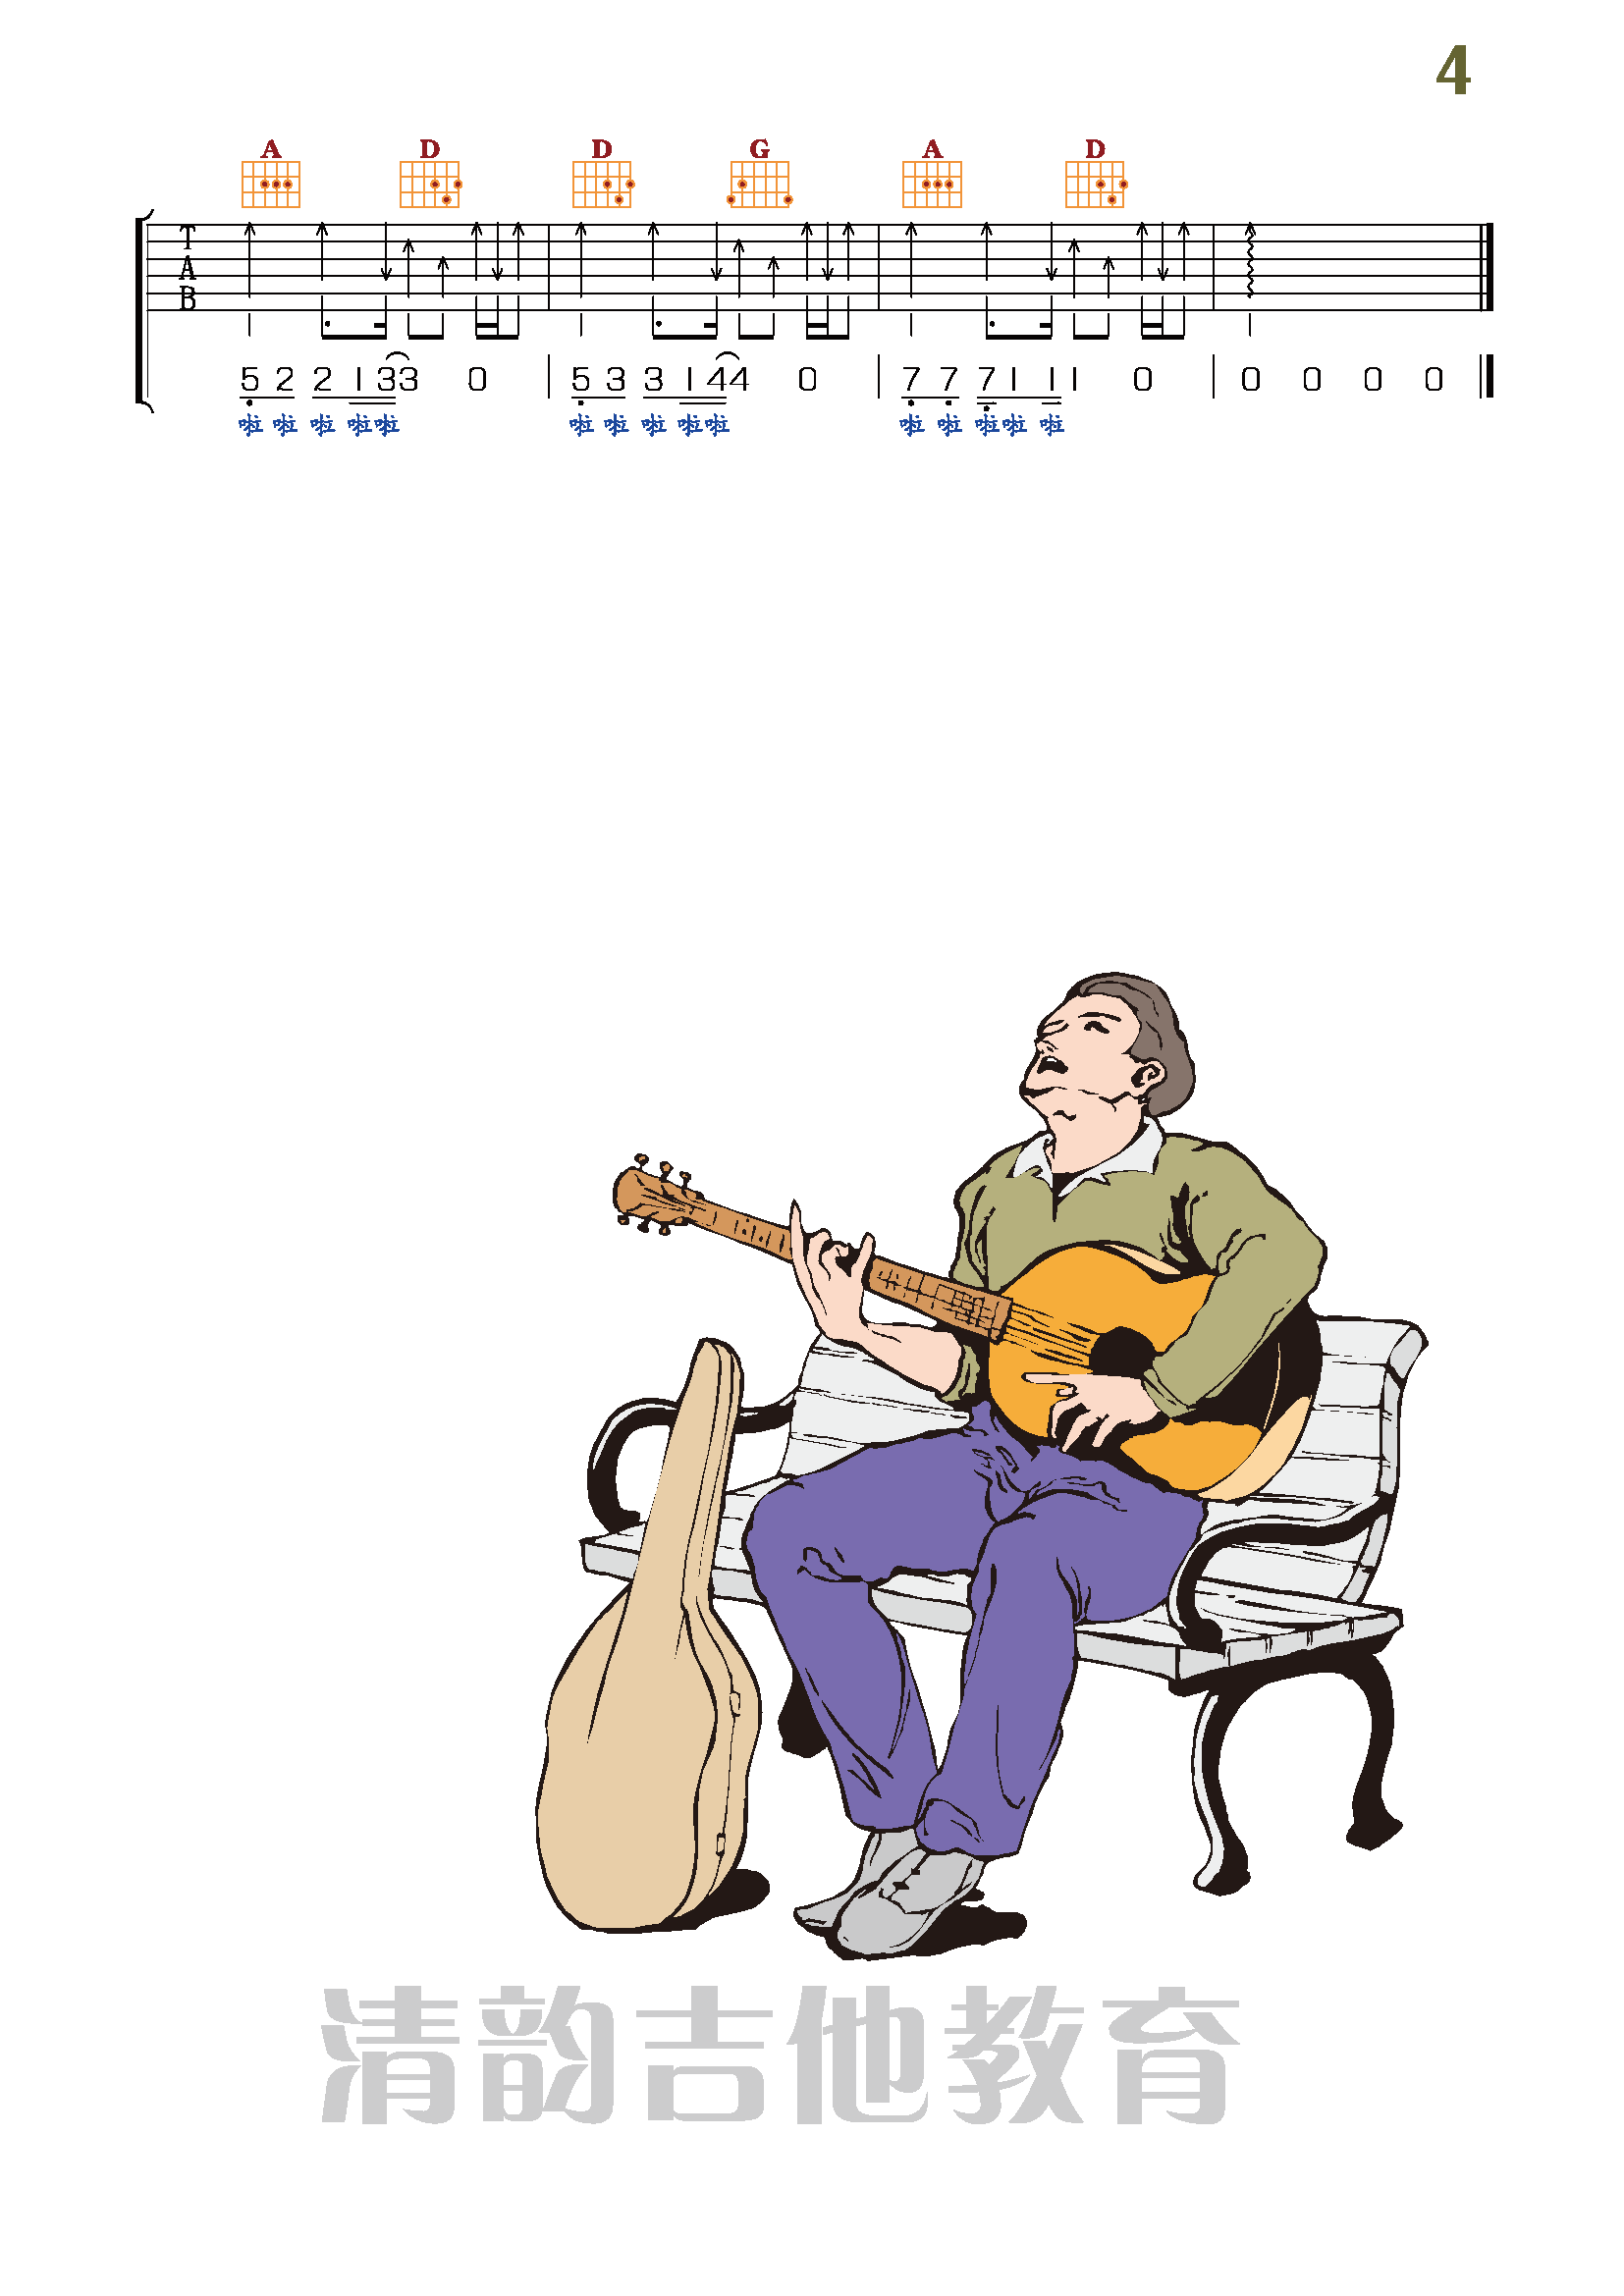 2002吉他谱 - 虫虫吉他谱免费下载 - 虫虫吉他